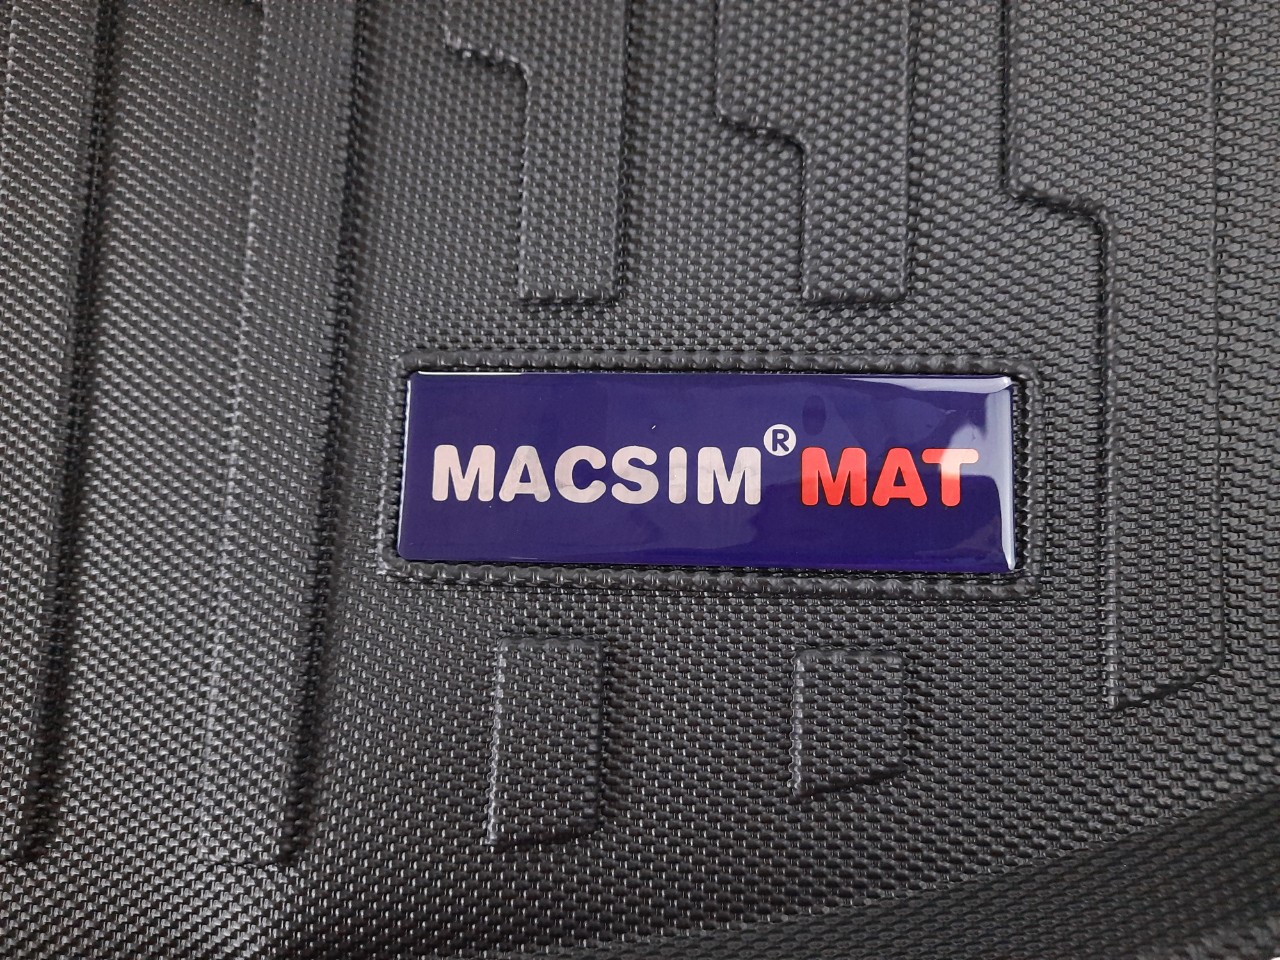 Thảm lót cốp xe ô tô Audi A3 2020 nhãn hiệu Macsim chất liệu TPV màu đen.